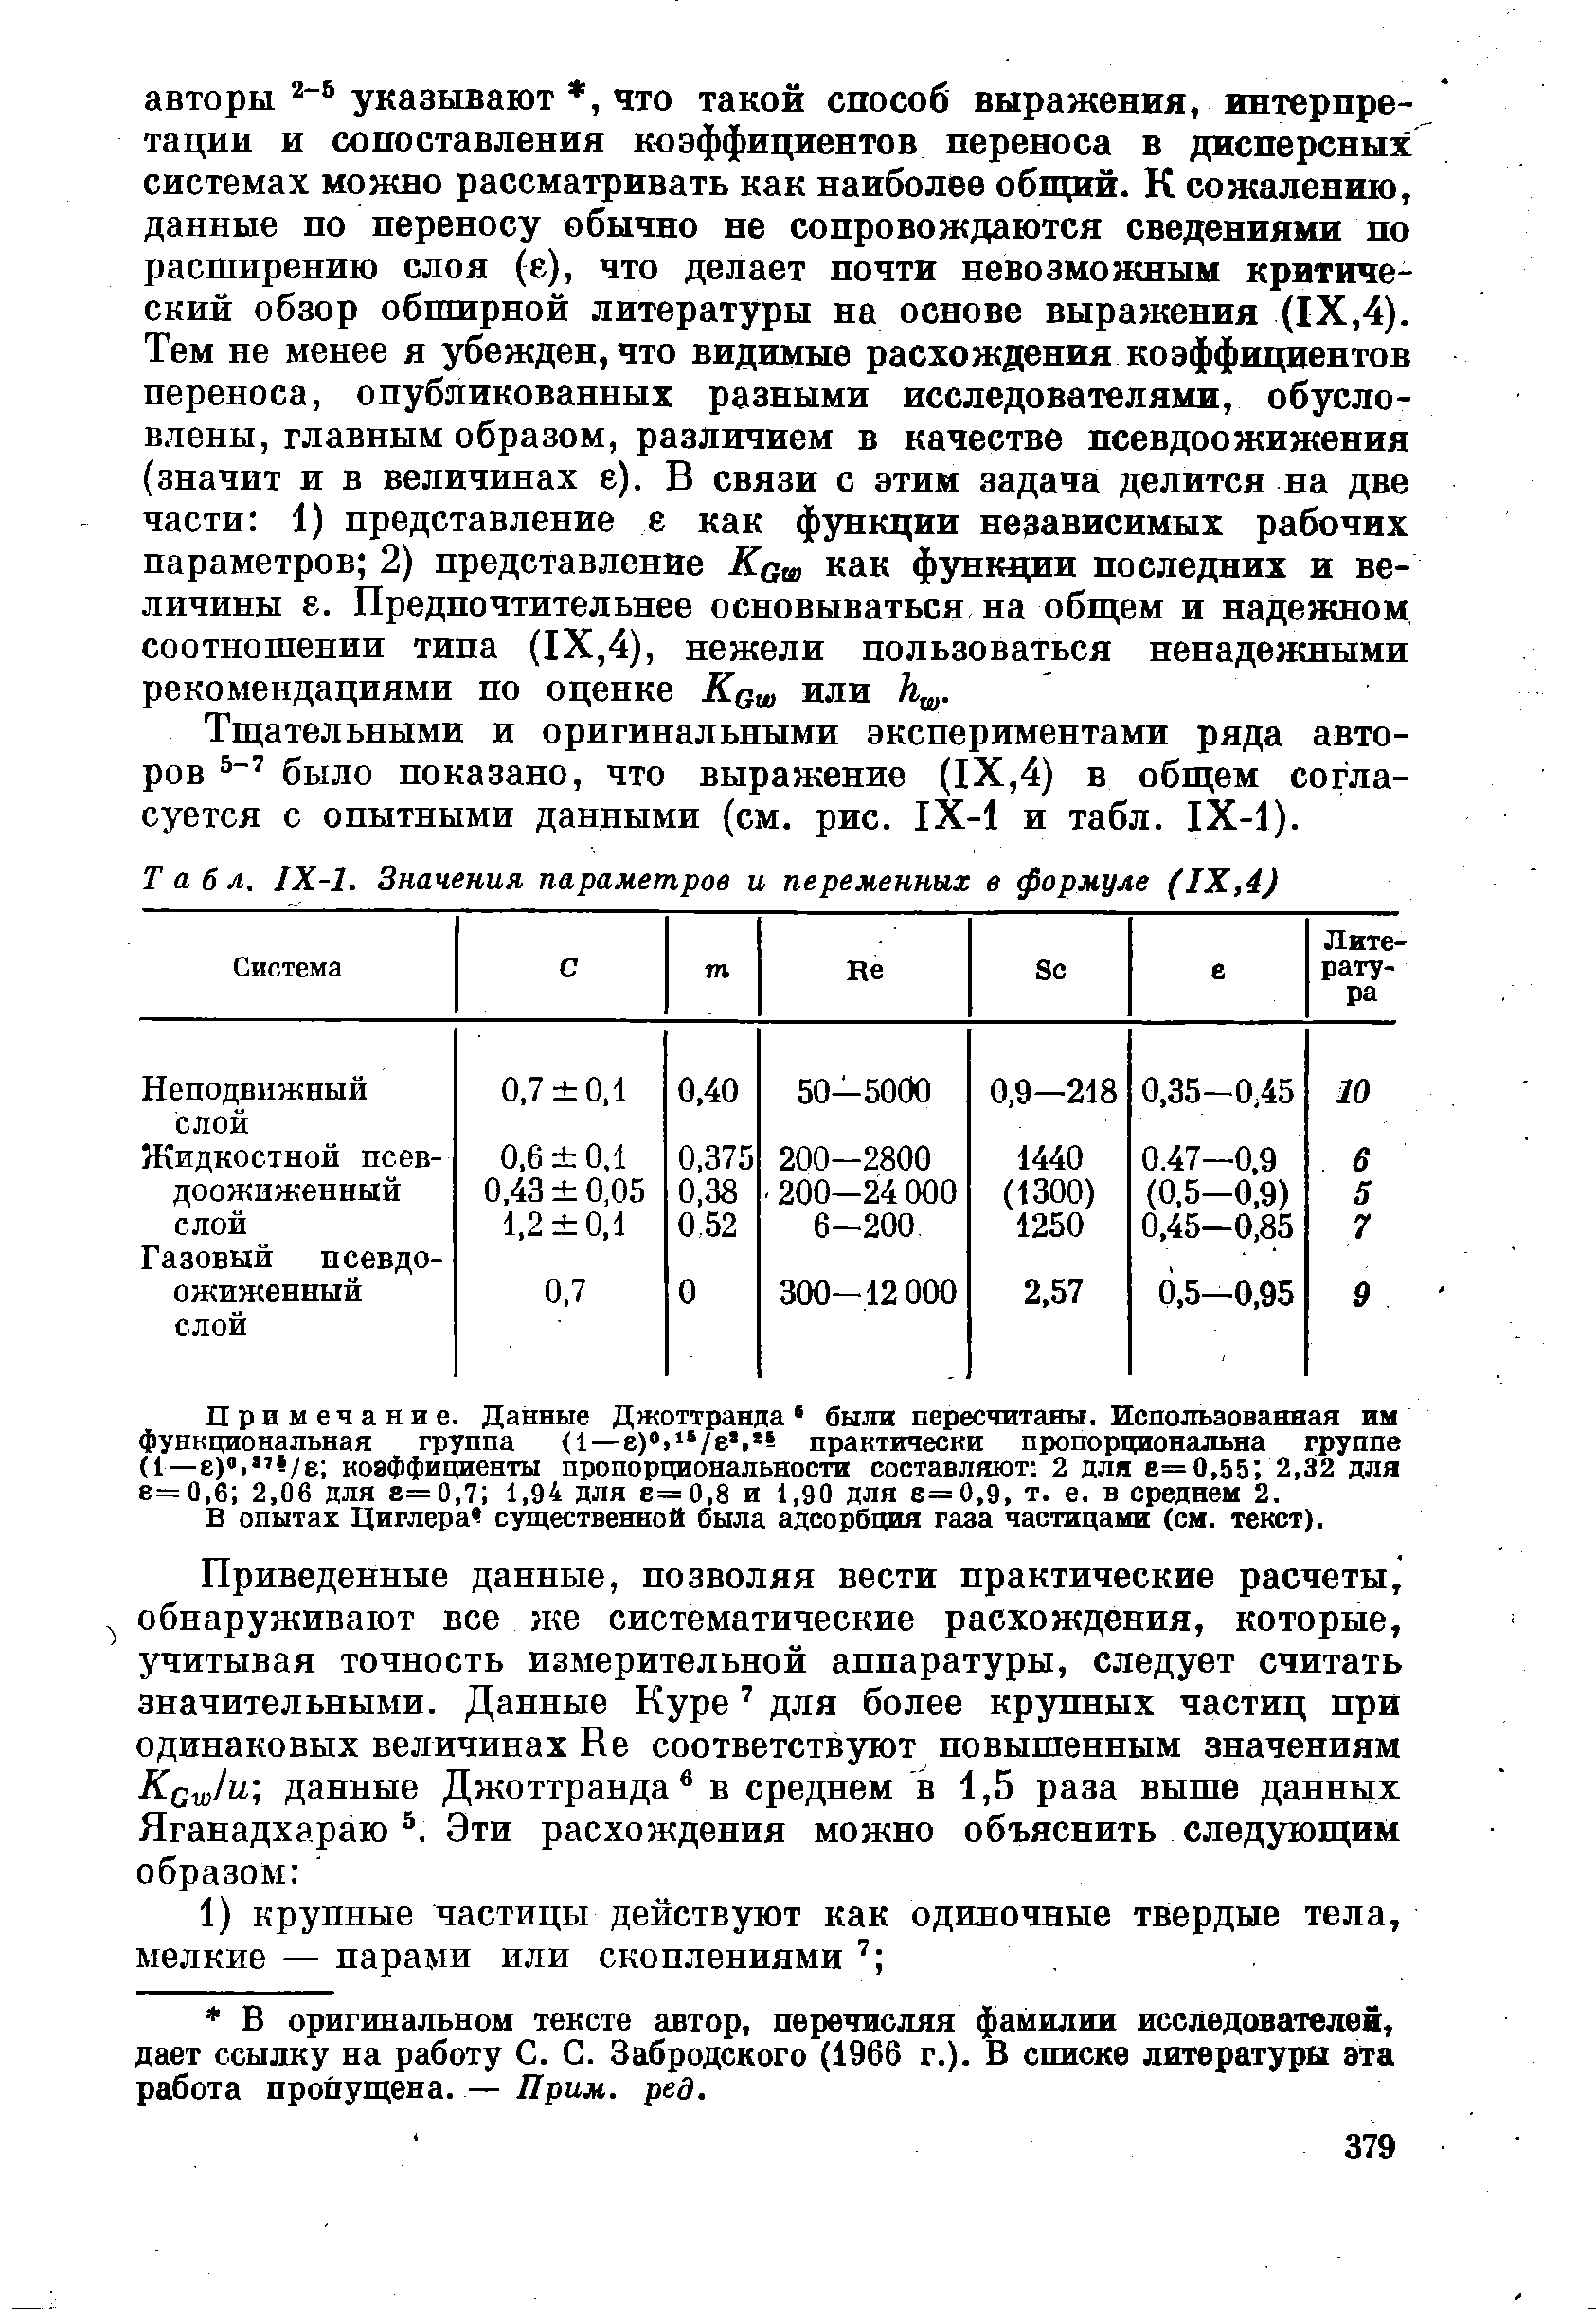 Тщательными и оригинальными экспериментами ряда авторов было показано, что выражение (IX,4) в общем согласуется с опытными данными (см. рис. 1Х-1 и табл. 1Х-1).